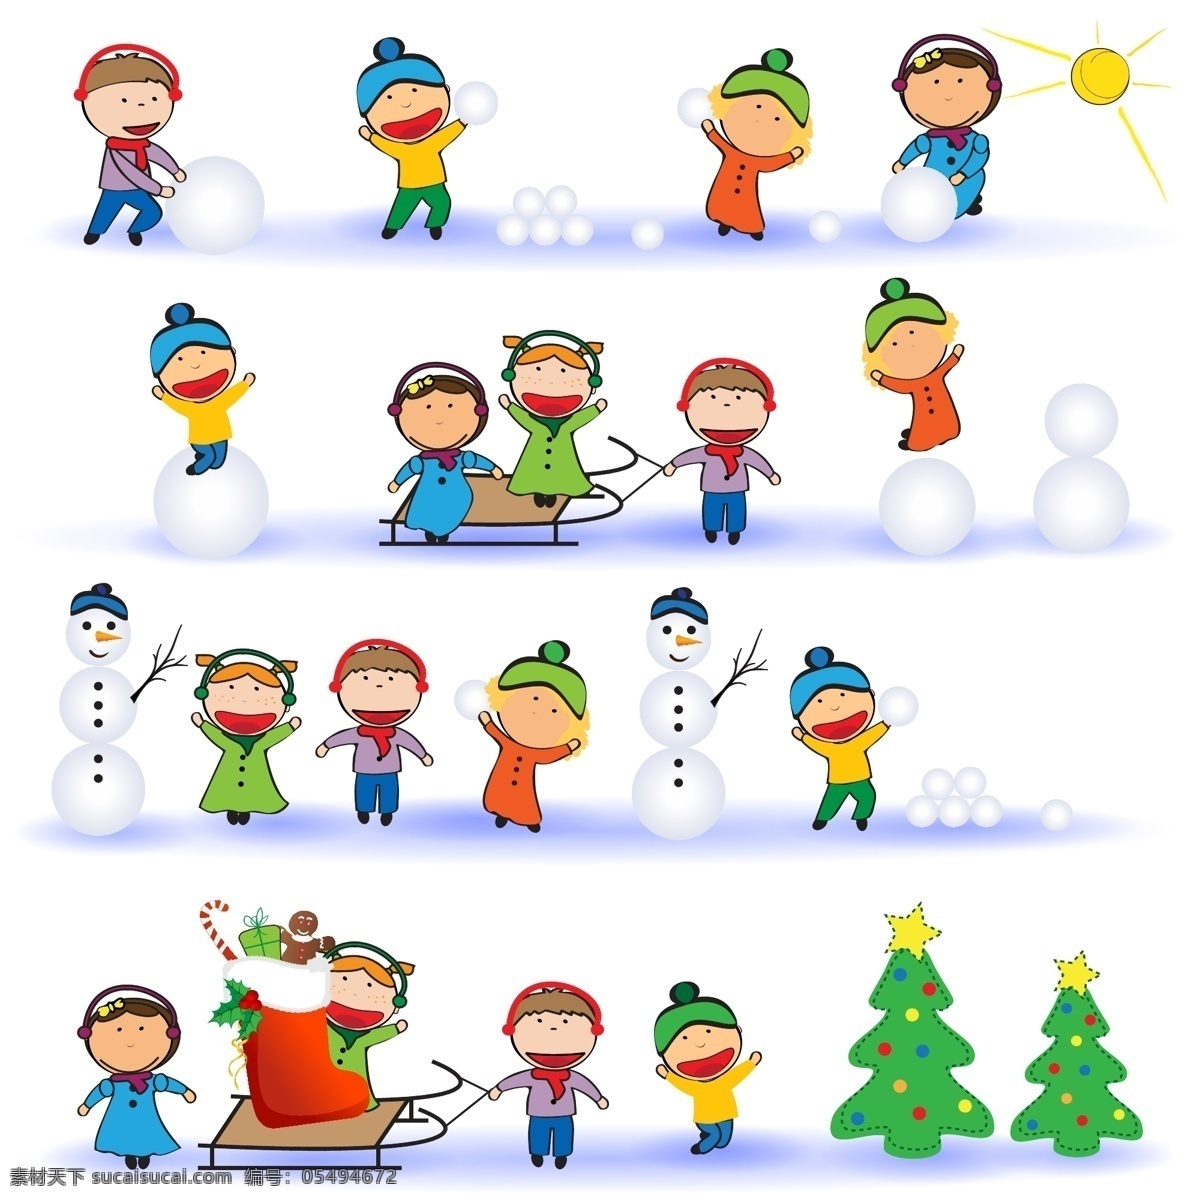 堆 雪人 圣诞树 卡通 动物 儿童 矢量 堆雪人 滚雪球 卡通儿童 矢量素材